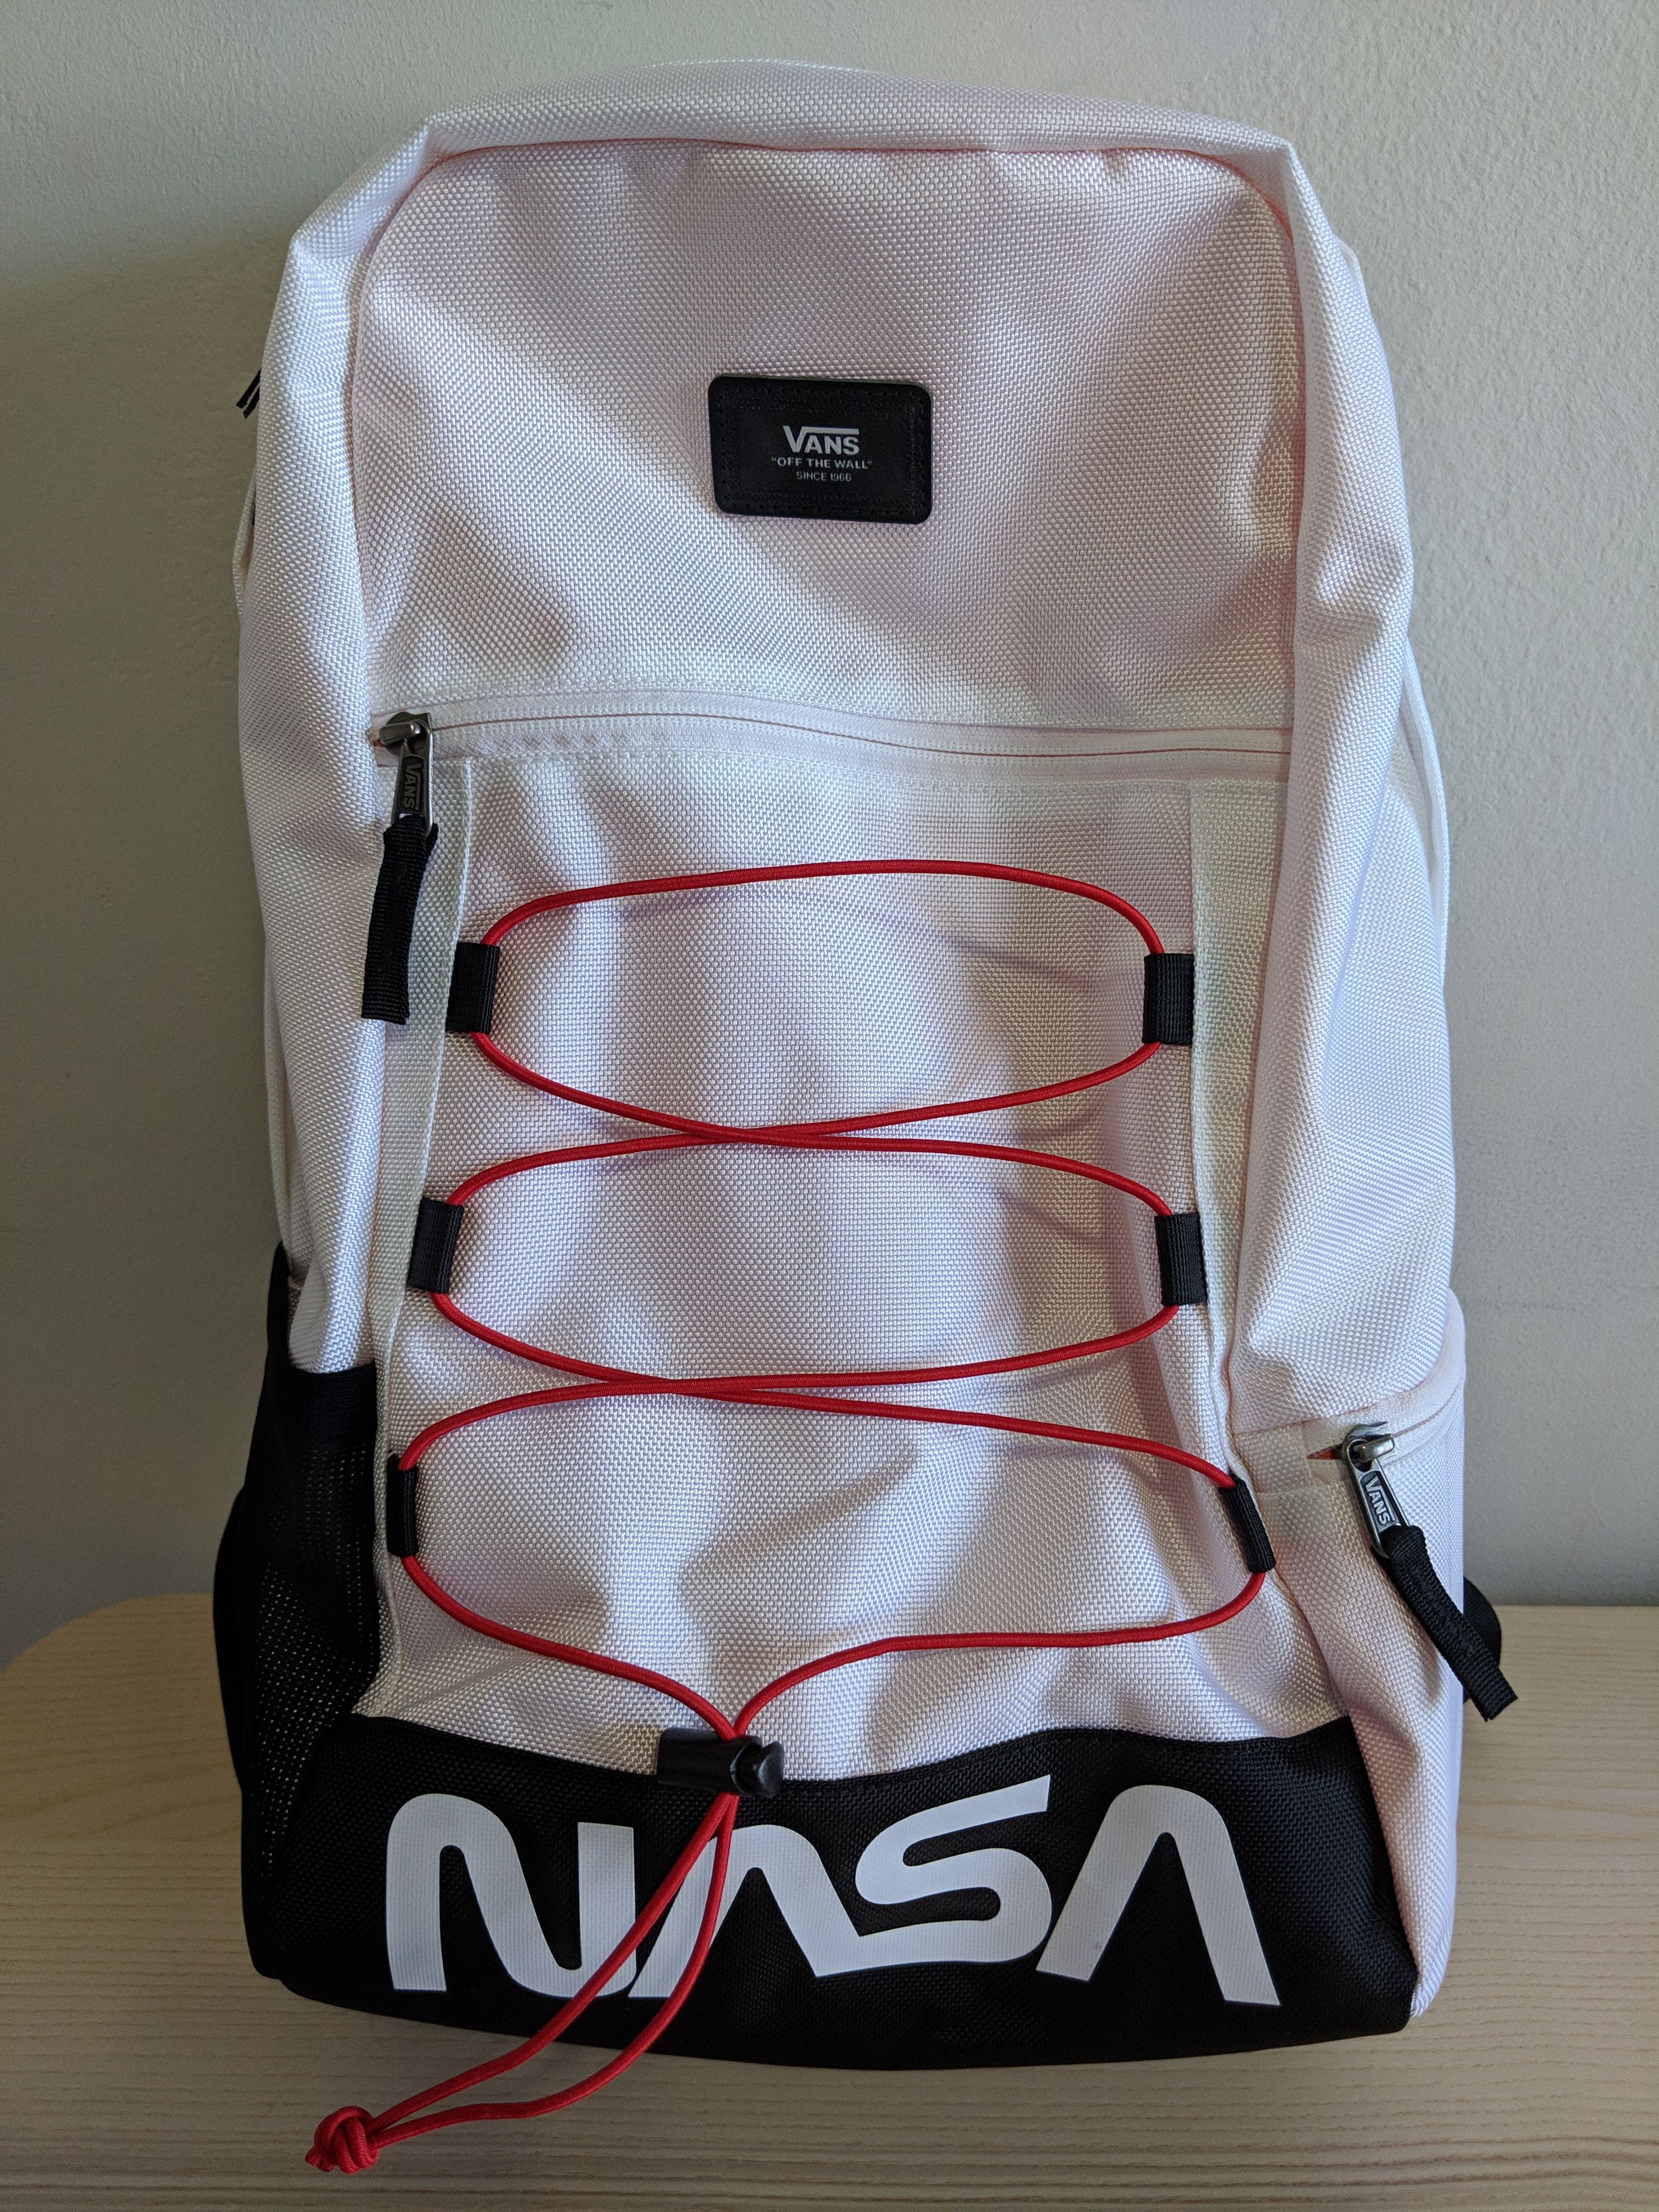 Vans x NASA Snag Plus Backpack | Grailed